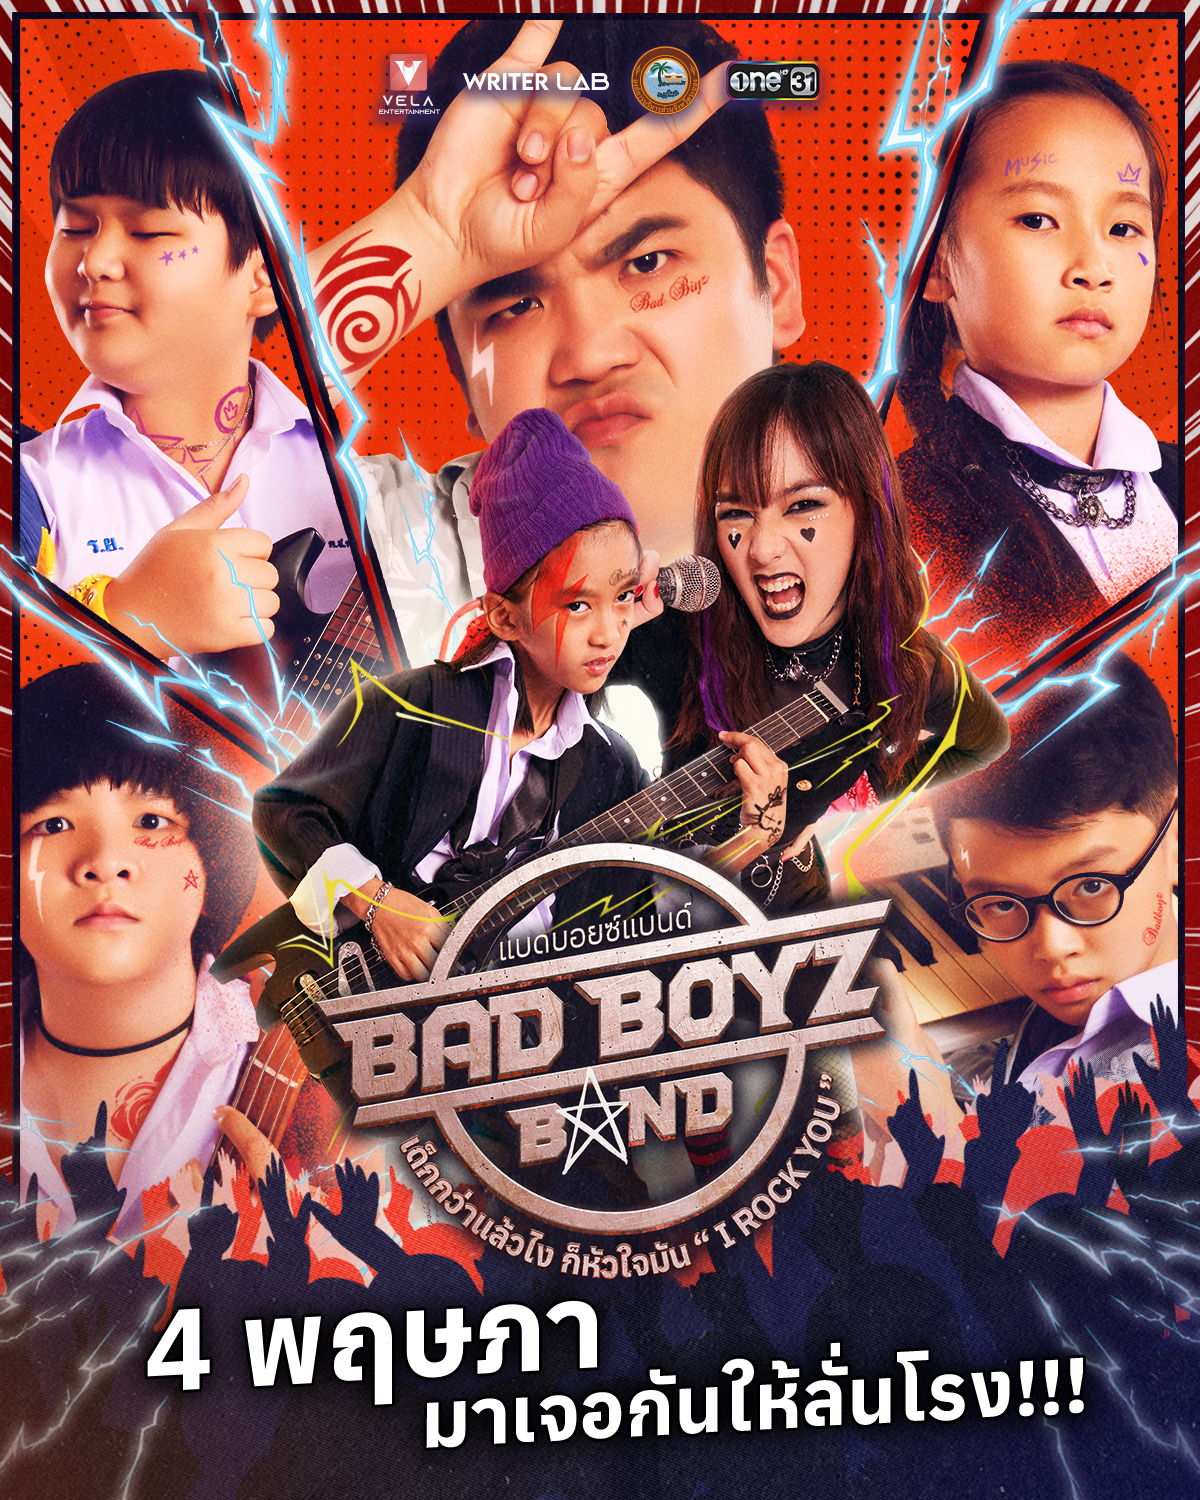 Bad Boyz Band: เด็กกว่าแล้วไง ก็หัวใจมัน “I Rock You” จากปรากฏการณ์เพลงดัง สู่หนังใสๆ ของวัยรุ่นฟันน้ำนม